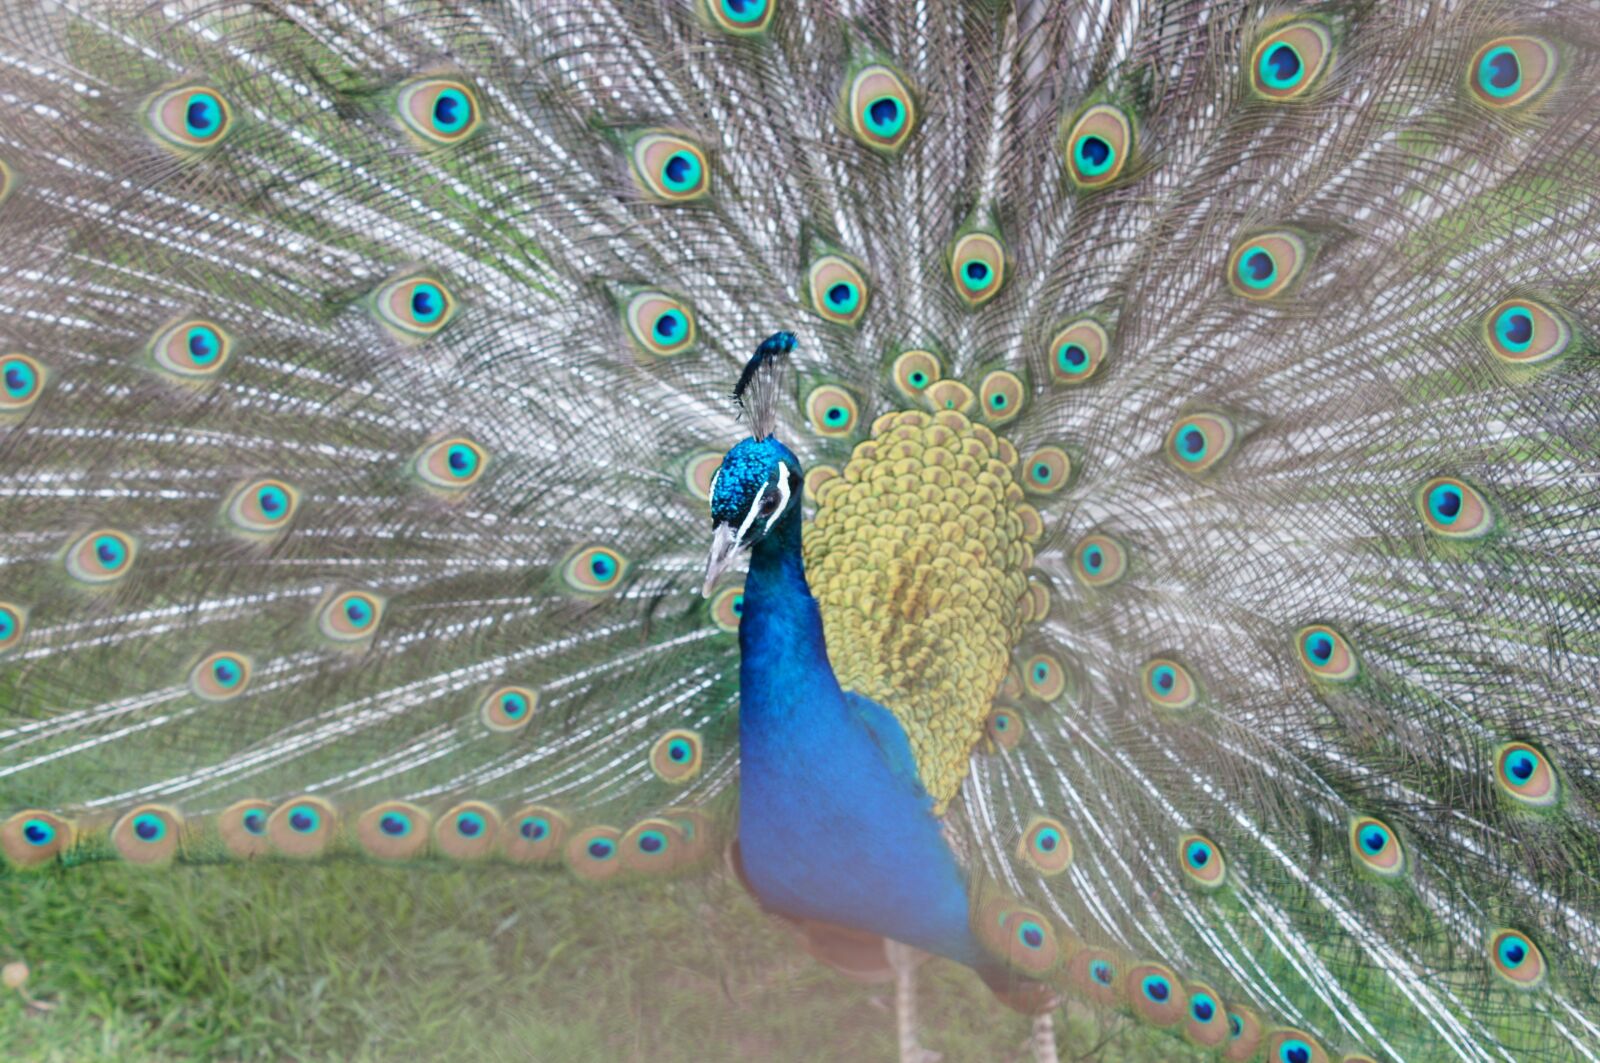 Sony SLT-A35 + Sony DT 50mm F1.8 SAM sample photo. Peacock, zoo, bird photography